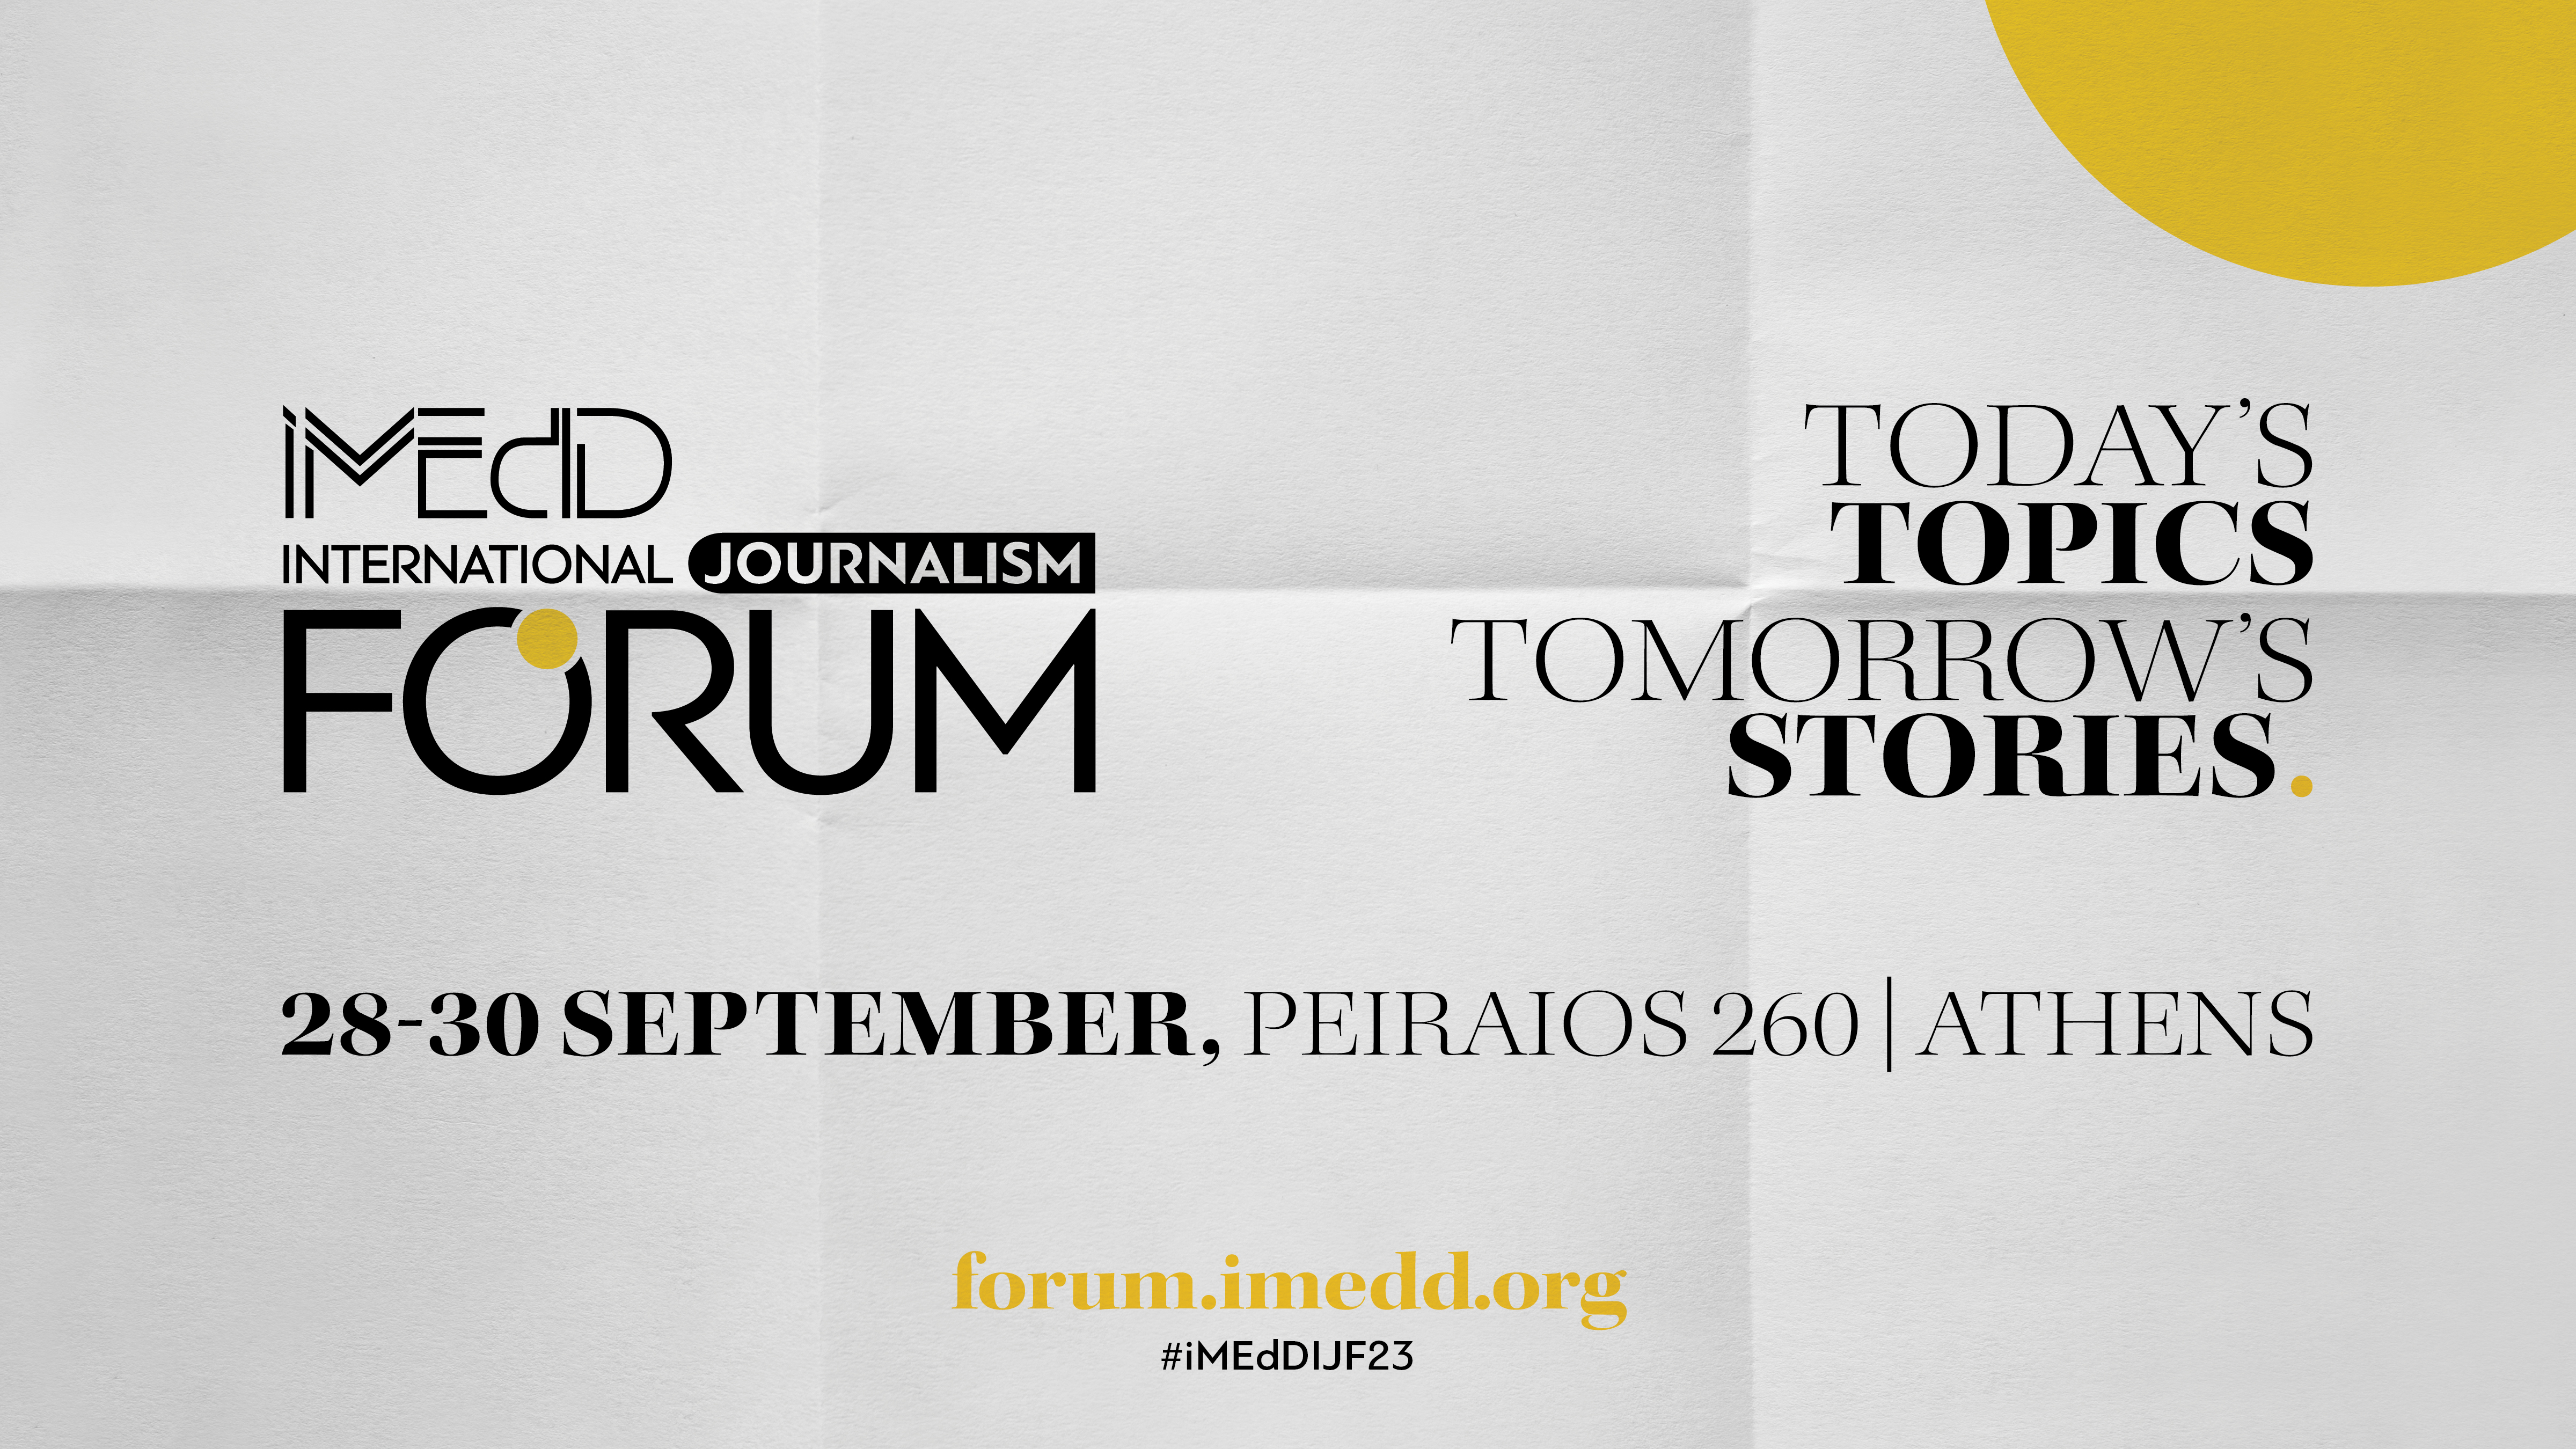 Ολοκληρώθηκε το iMEdD International Journalism Forum 2023